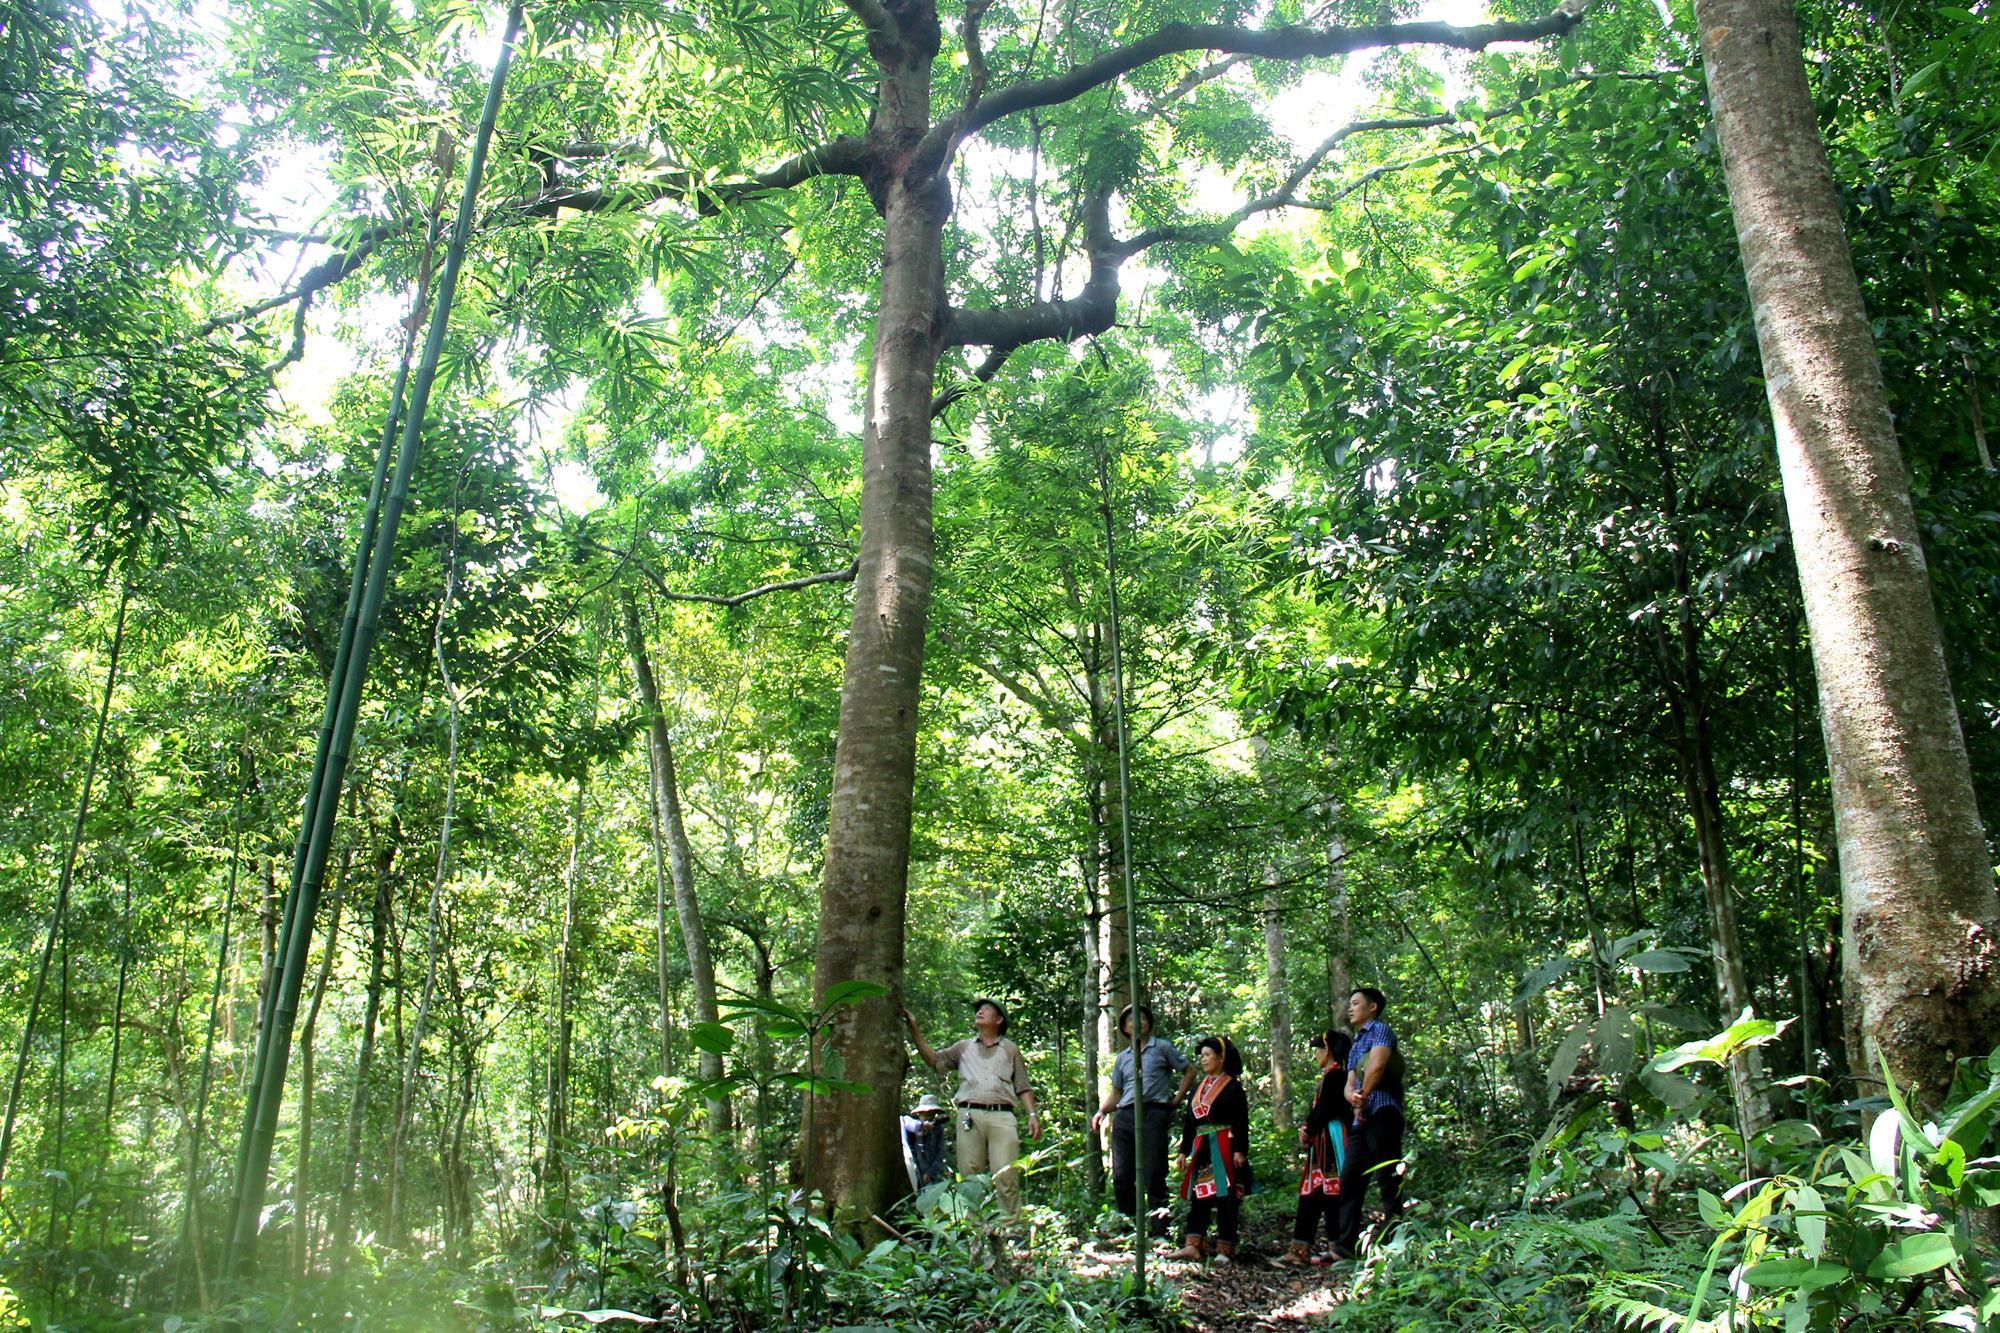 Trồng rừng gỗ lớn là một trong những đề án phát triển lâm nghiệp theo hướng bền vững tại Quảng Ninh.